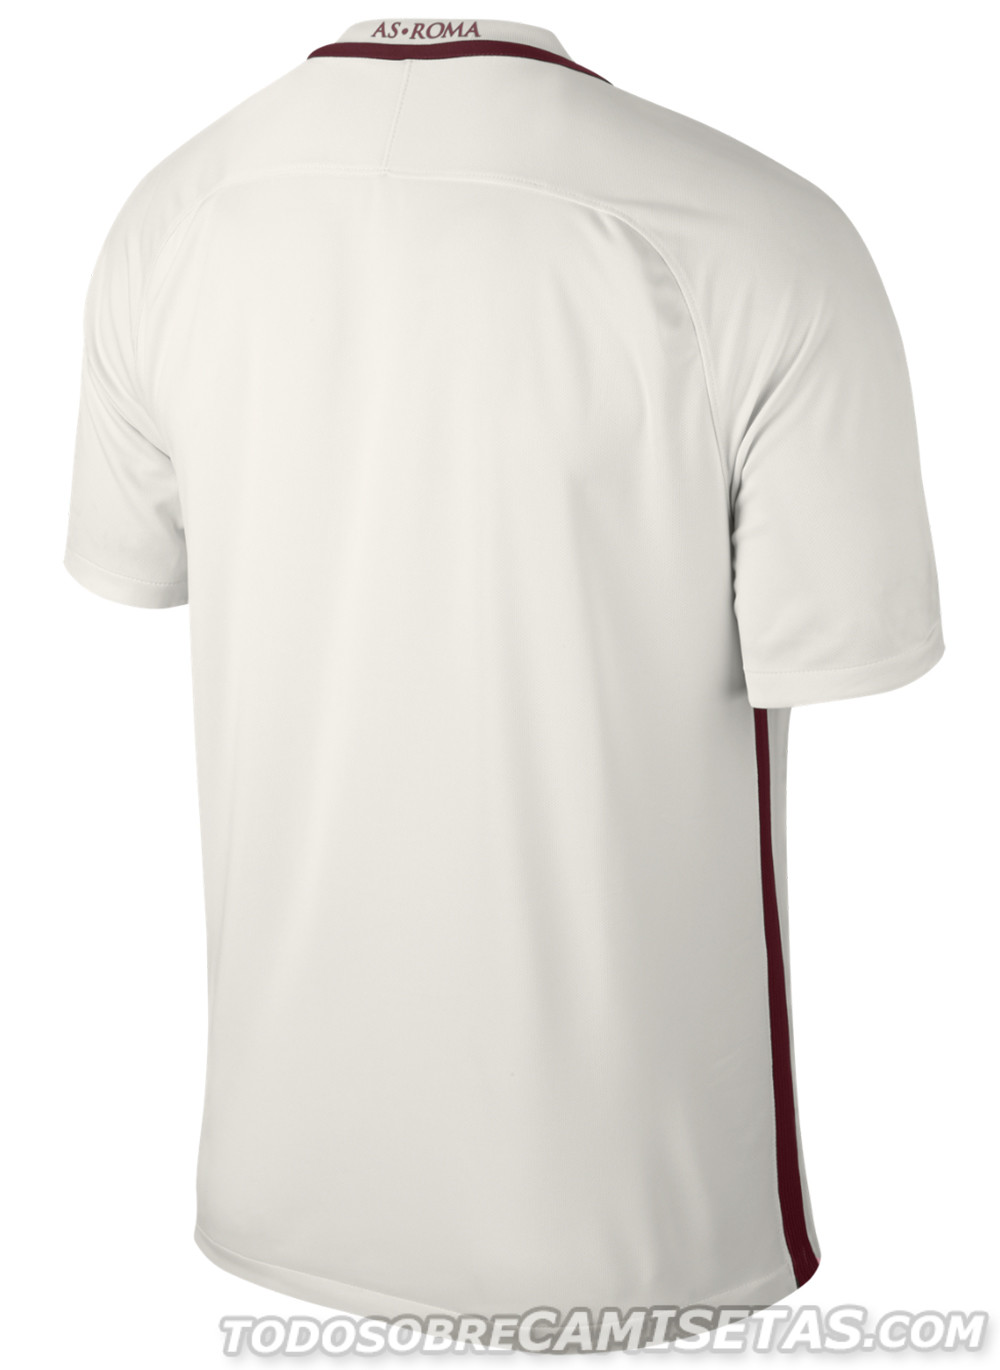 Roma 2016-17 Nike away kit